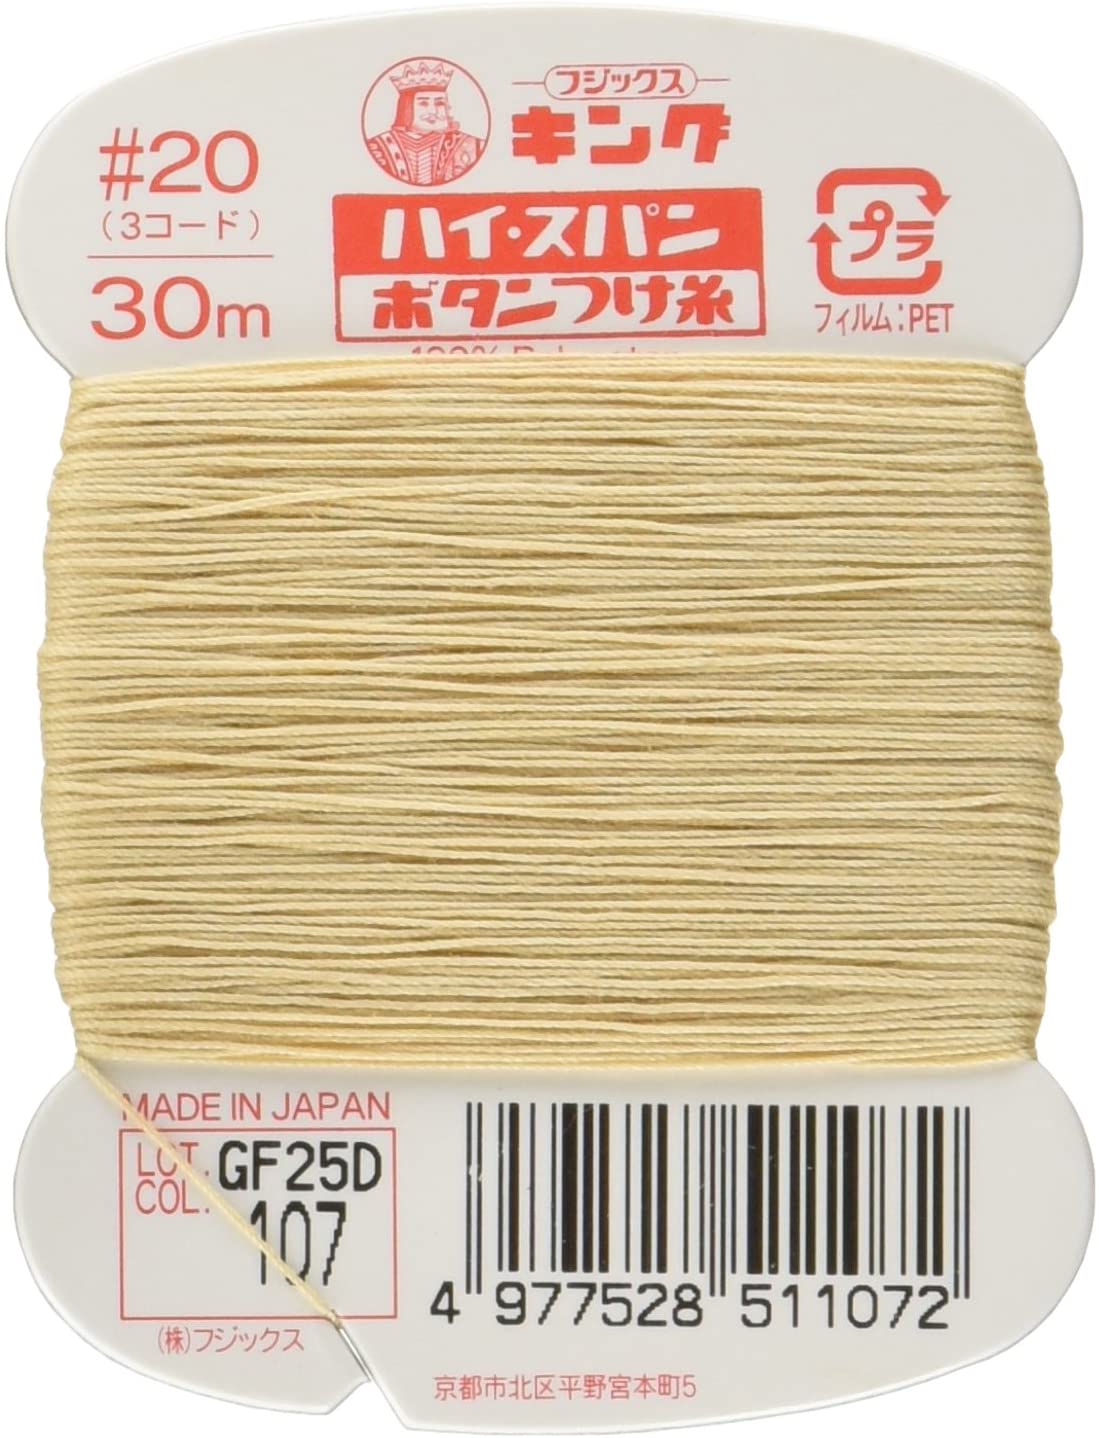 FK51-107 ハイスパンボタンつけ糸 #20 30m巻 (枚)